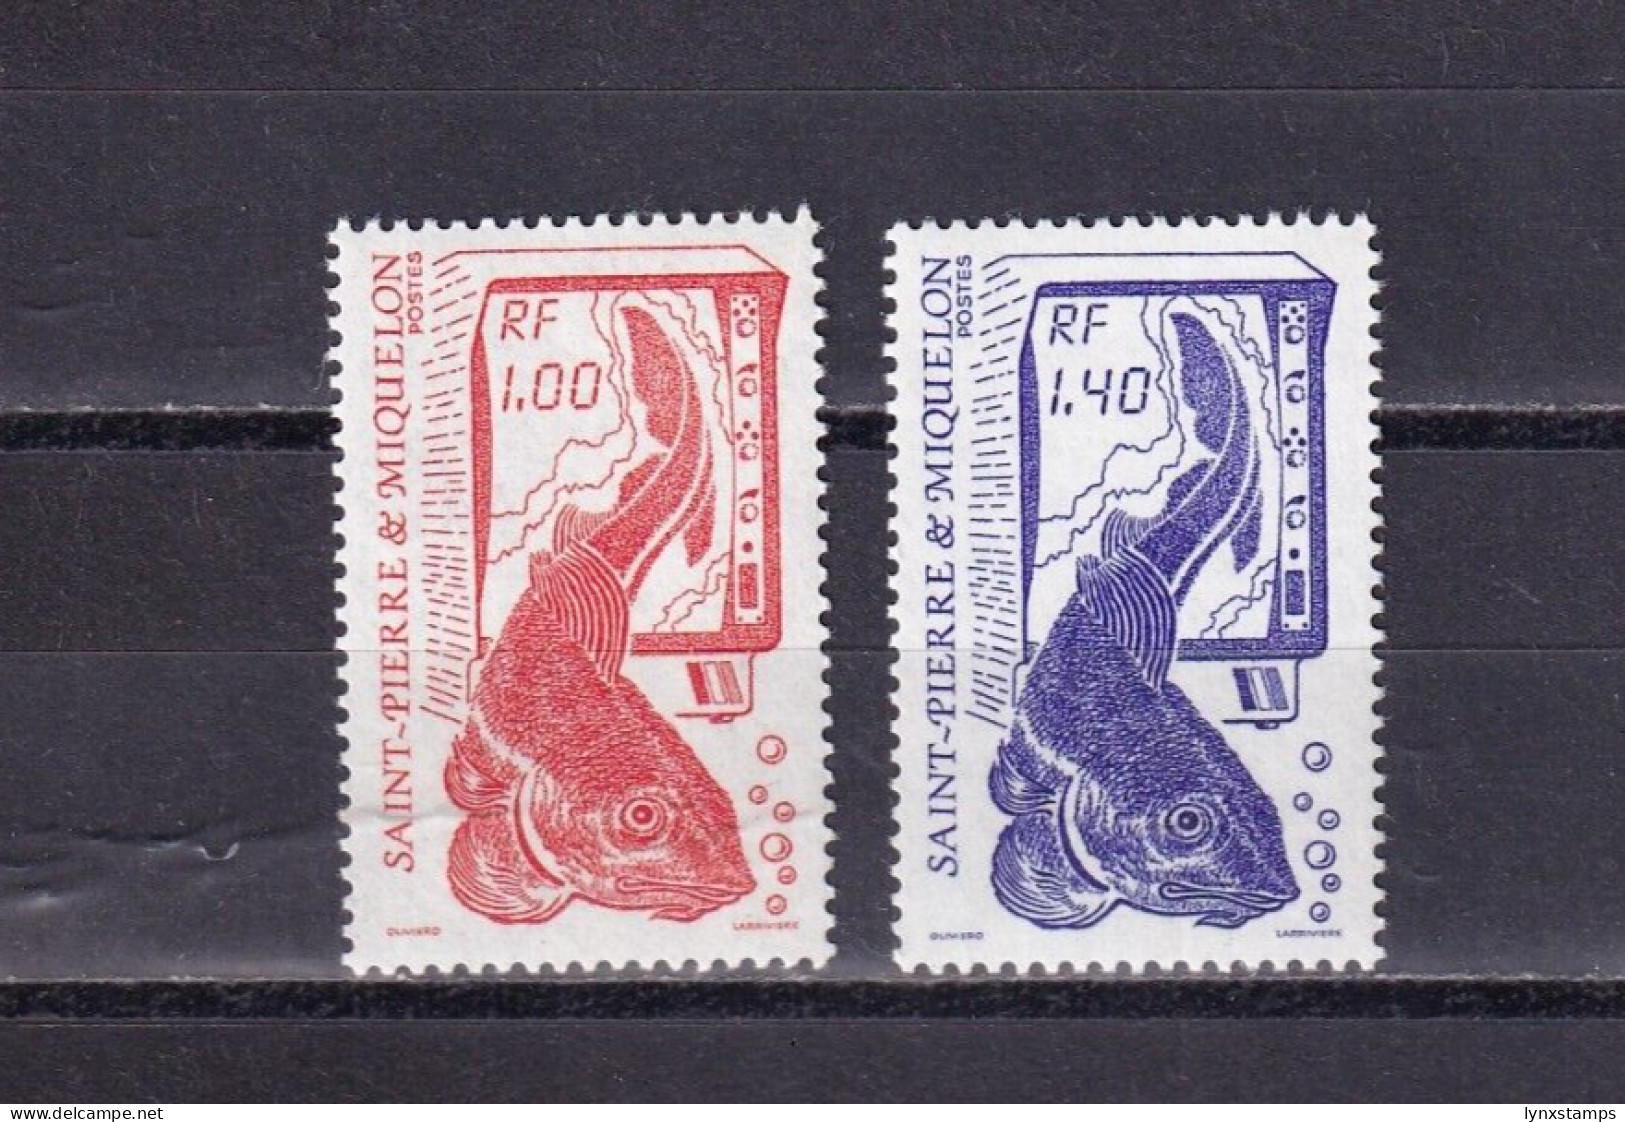 SA03 St Pierre Et Miquelon France 1986 Fishing Mint Stamps - Neufs